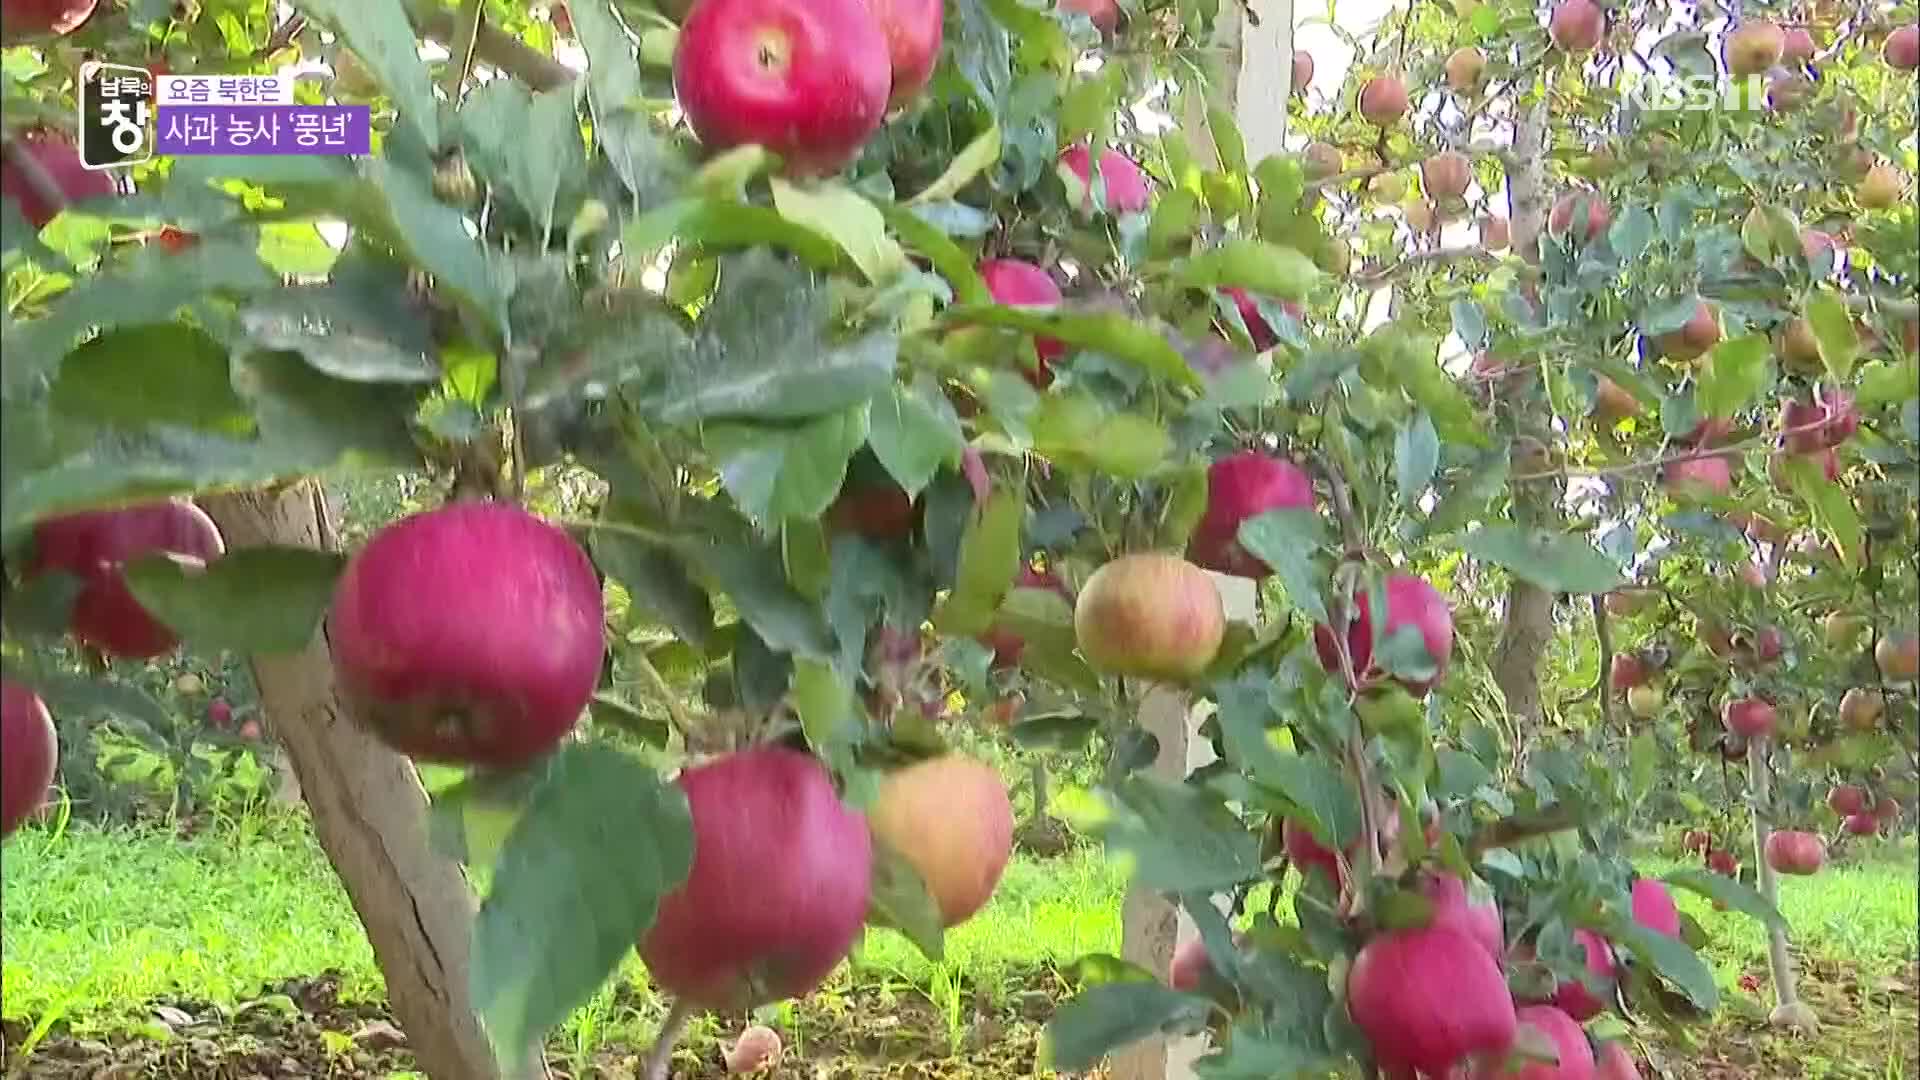 [요즘 북한은] 한 그루에 200개는 기본…사과 농장 웃음꽃 외